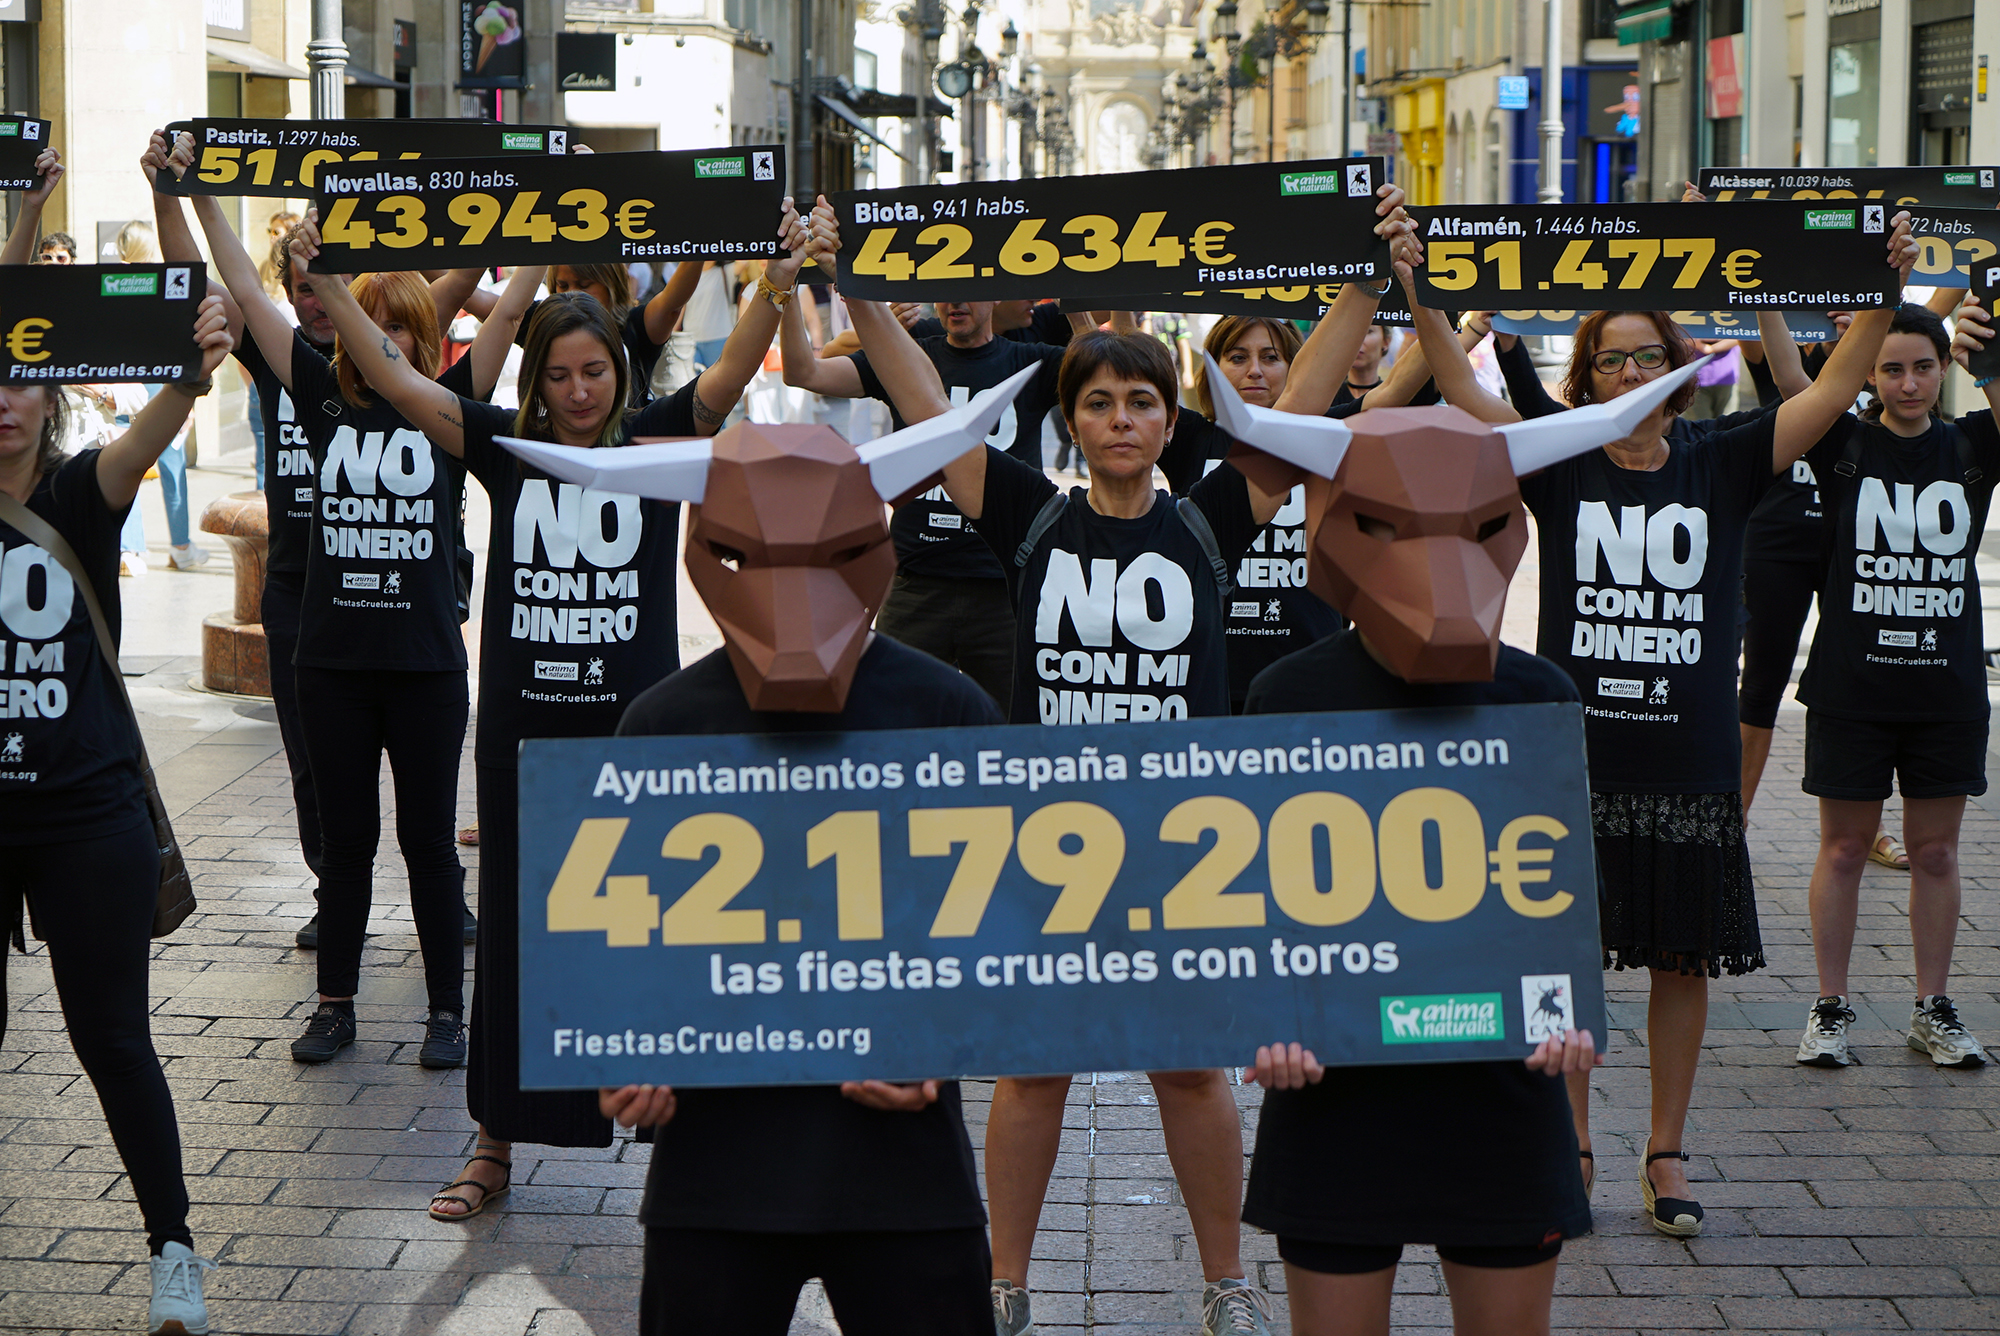 ¡Más de 3 millones de euros de gasto público para financiar festejos crueles en Aragón!